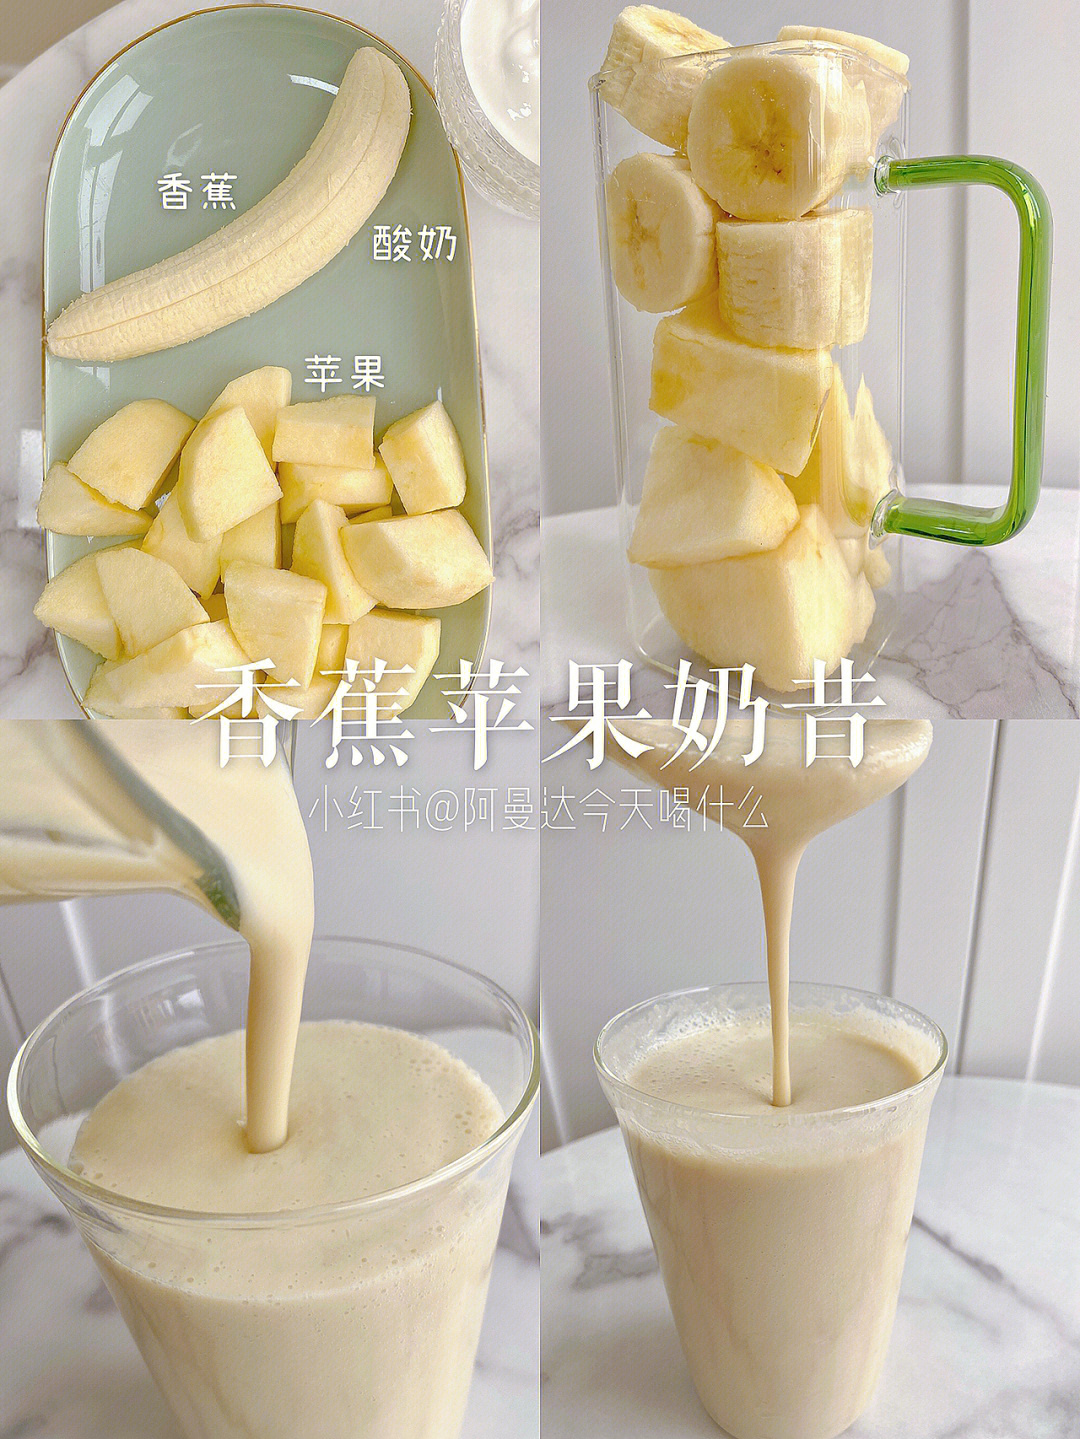 香蕉 苹果 酸奶/牛奶,香甜醇正,营养低卡,抗氧养颜!